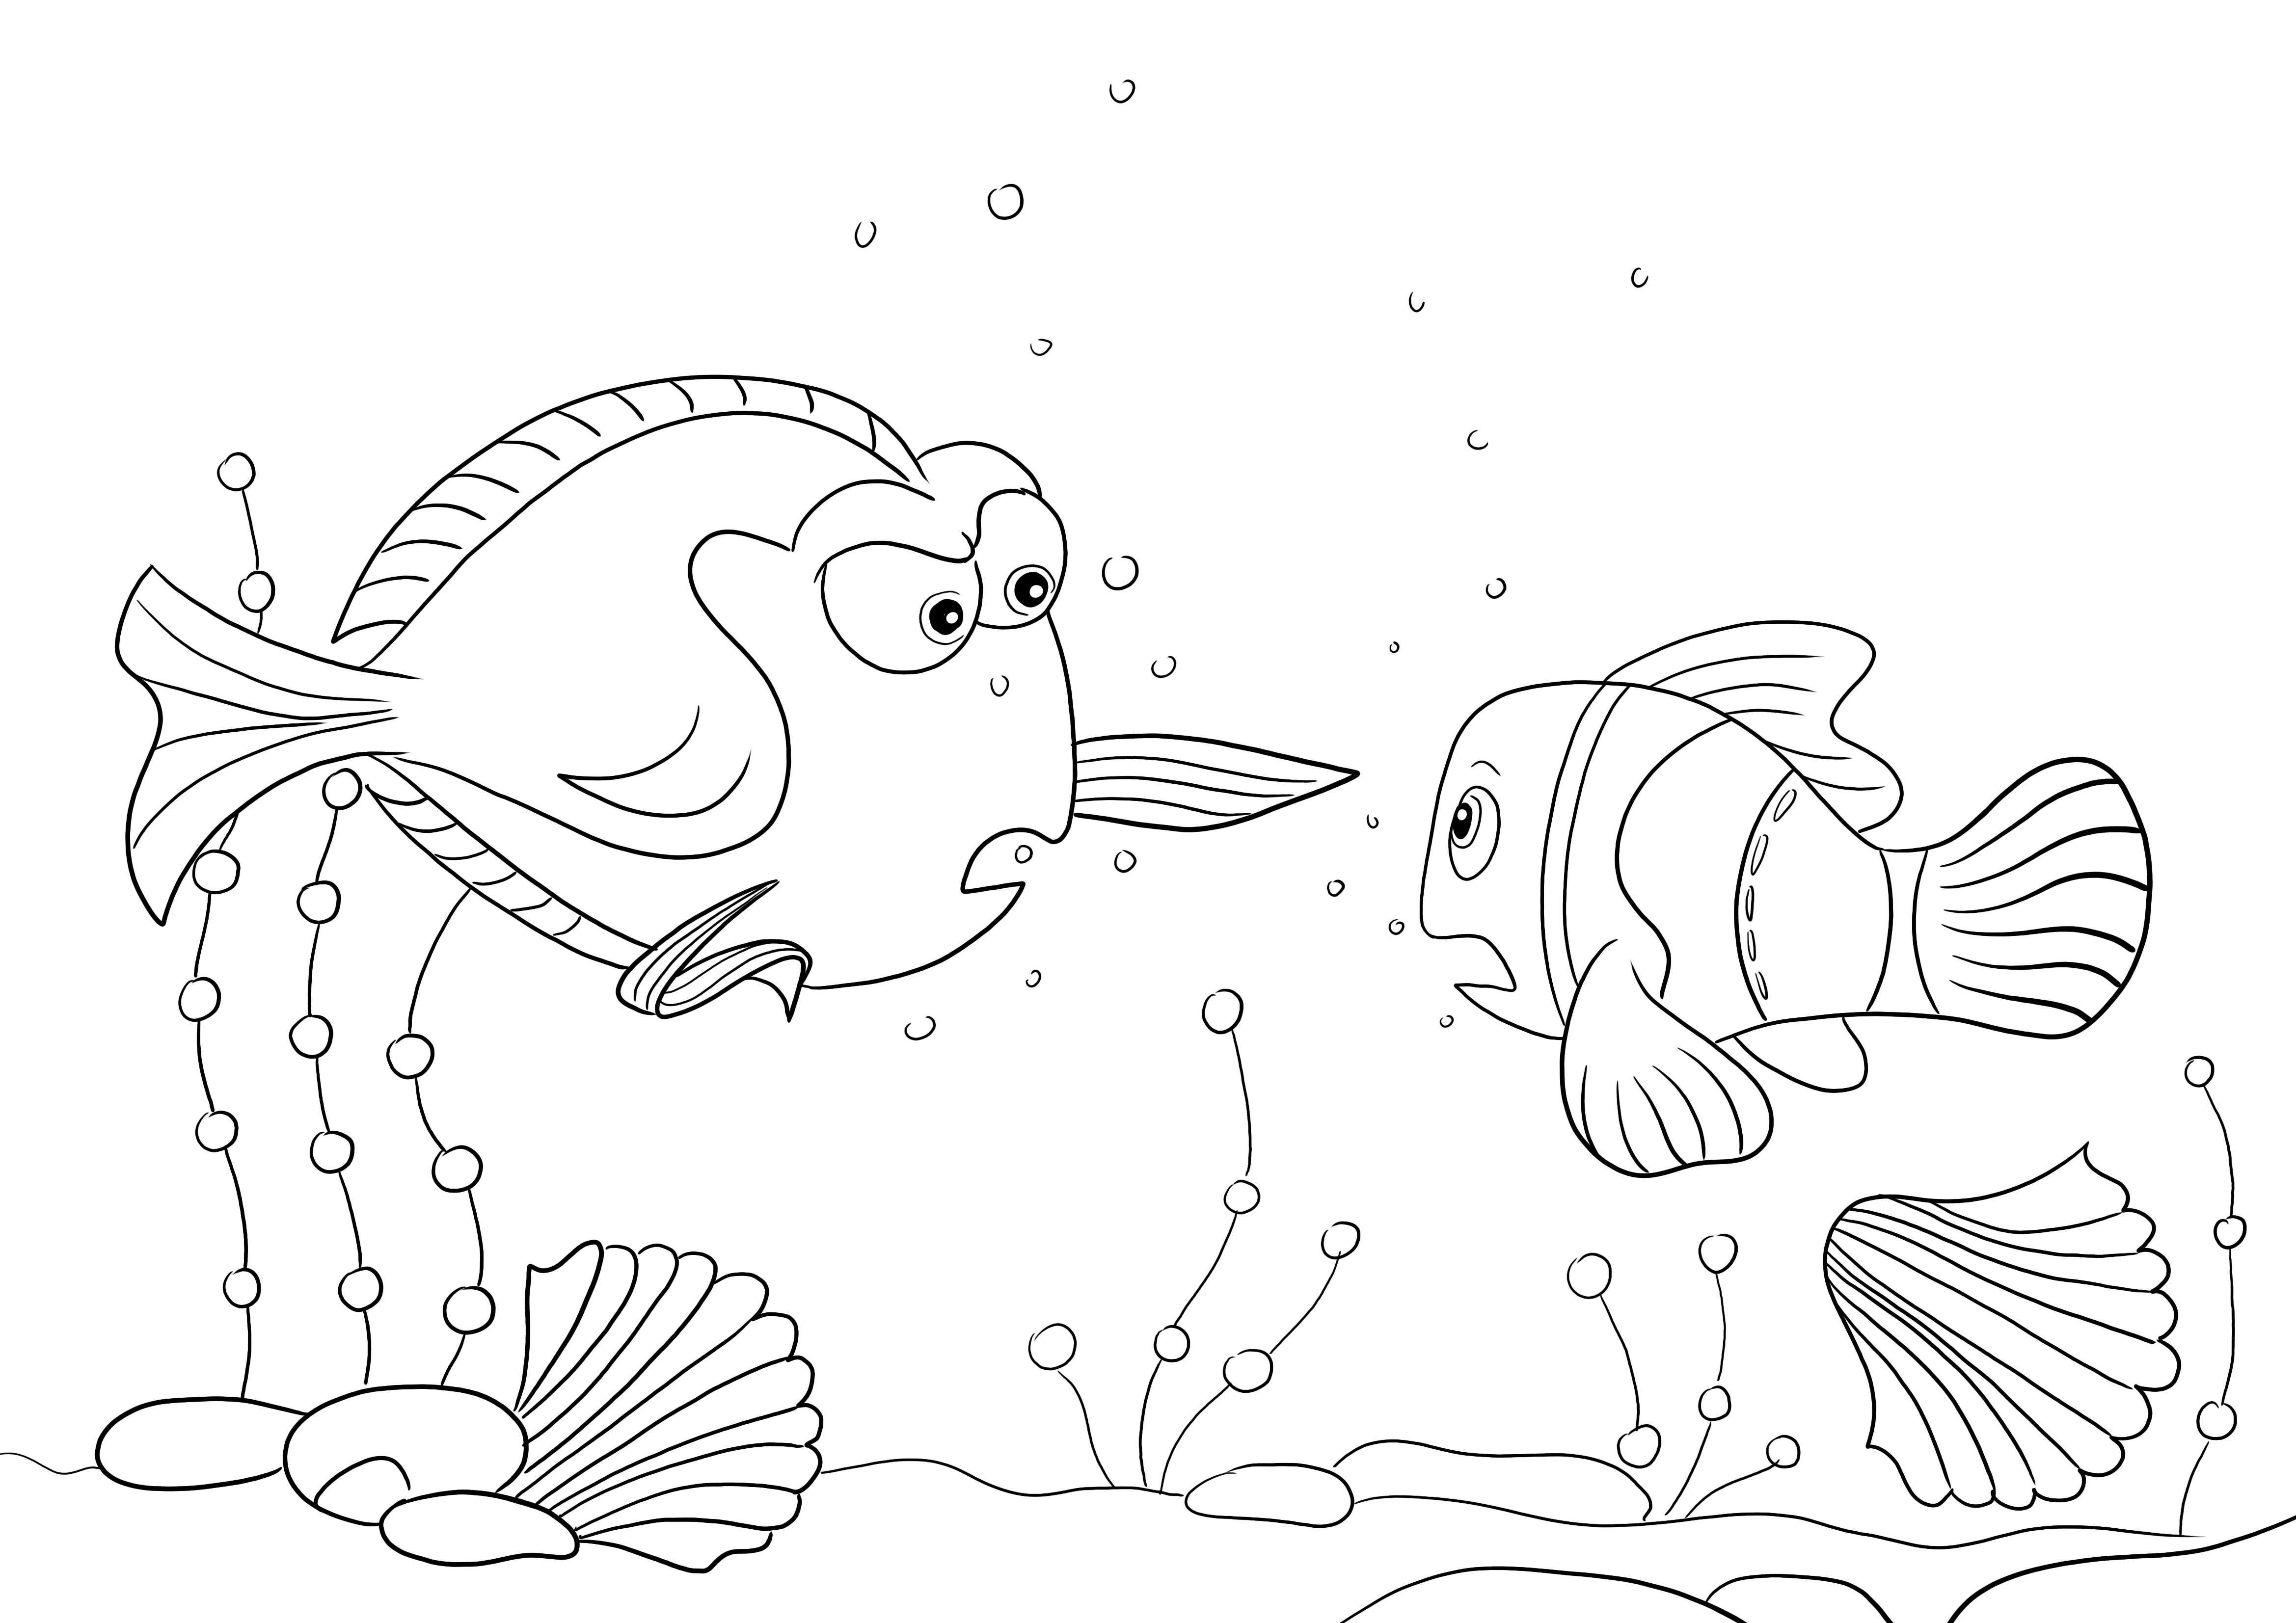 Charlie und Nemo kostenloses Ausmalbild für Kinder zum Herunterladen und Ausmalen mit Spaß